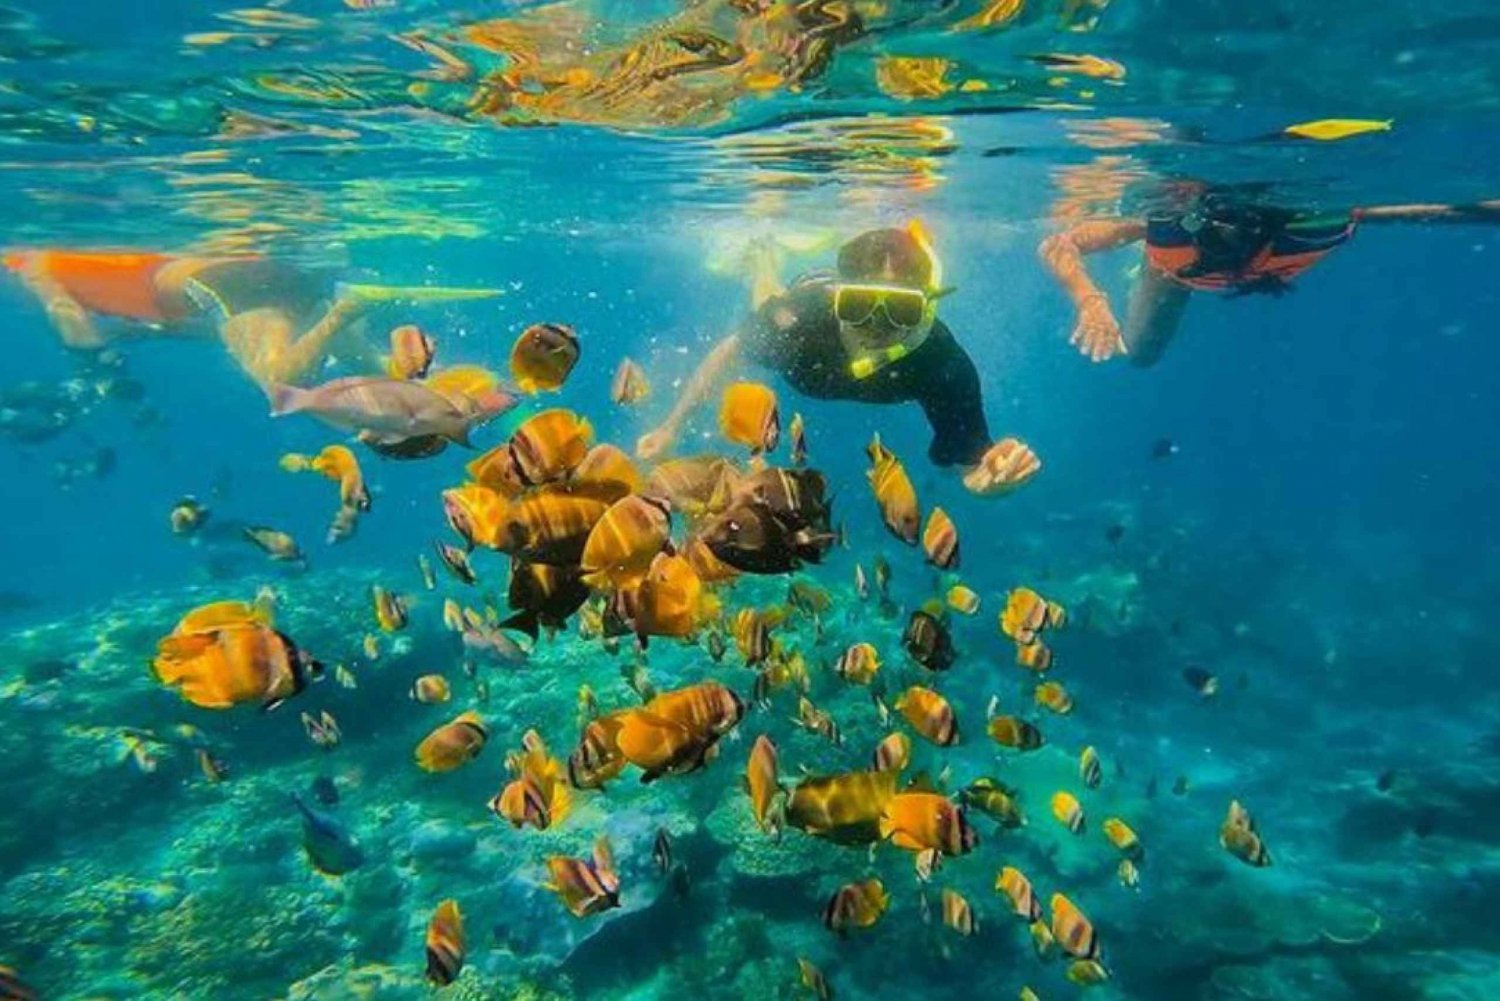 Bali Wschodnie: Snorkeling w Błękitnej Lagunie - All inclusive